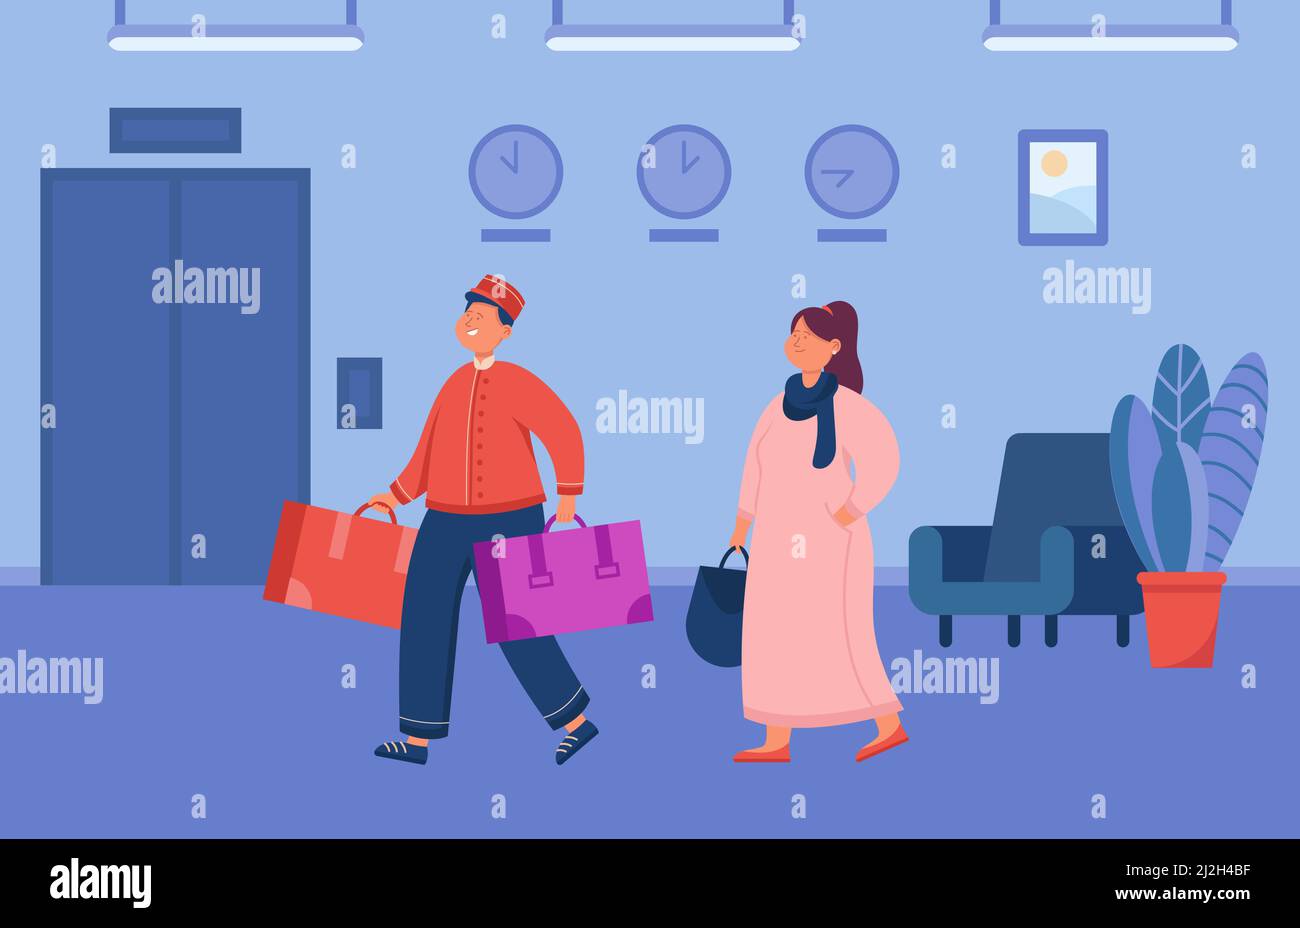 Cartoon Bell boy hilft weiblichen Gast Gepäck tragen. Hotelangestellte und Frau in der Lobby, flache Vektorgrafik. Reise- und Hospitality-Service-Konzept Stock Vektor